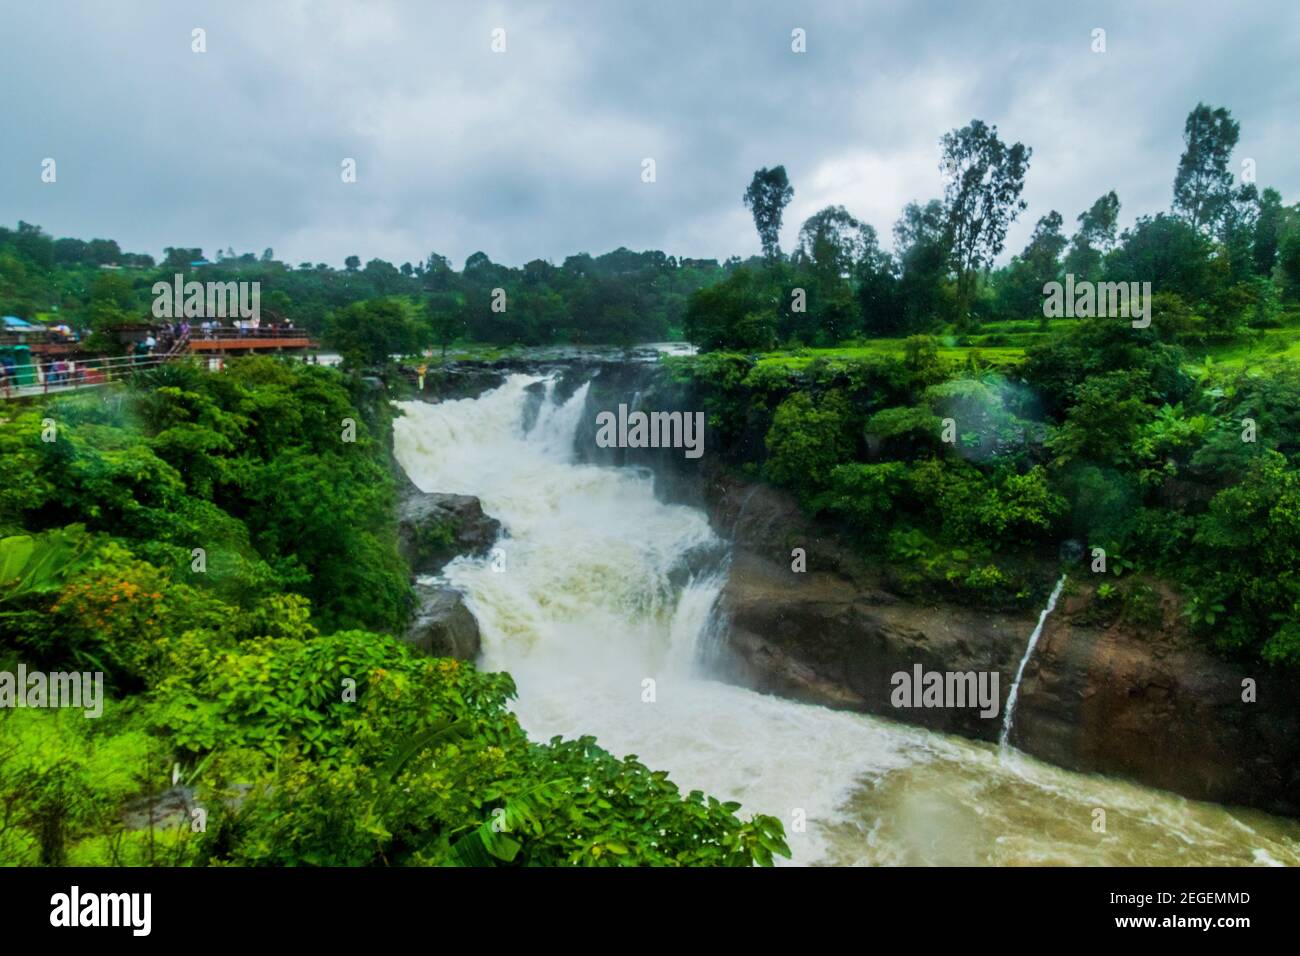 Randha falls in Bhandhardhara Stock Photo